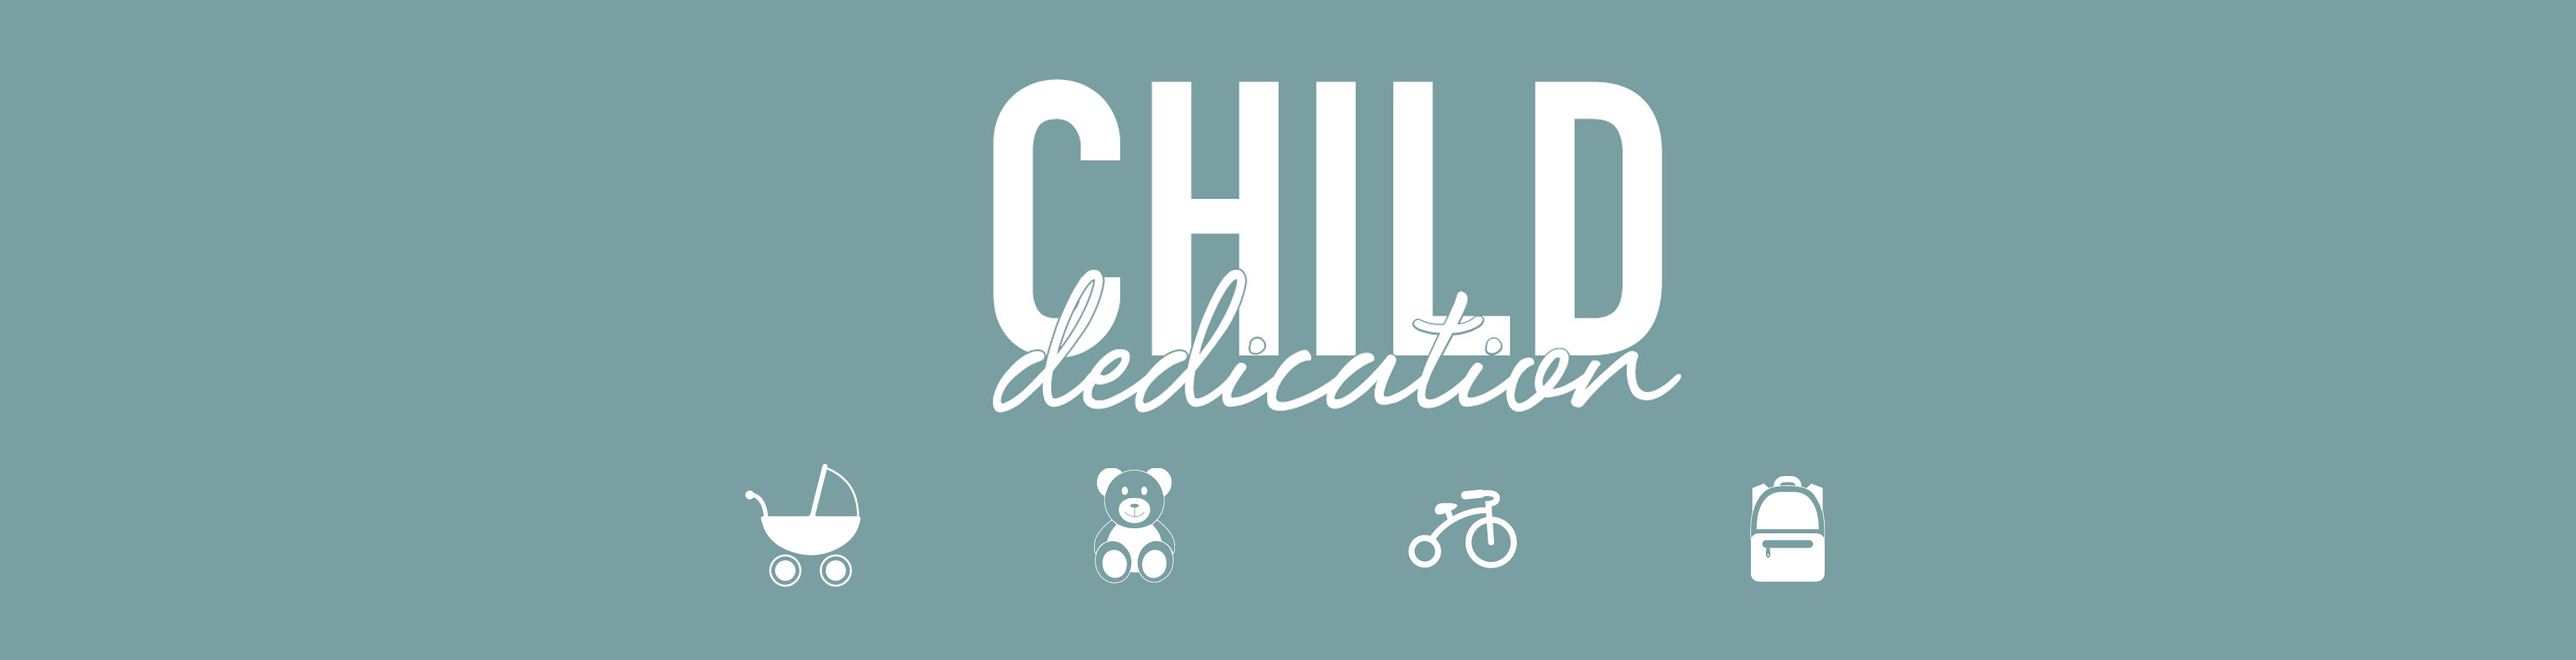 Child Ded Event Header image